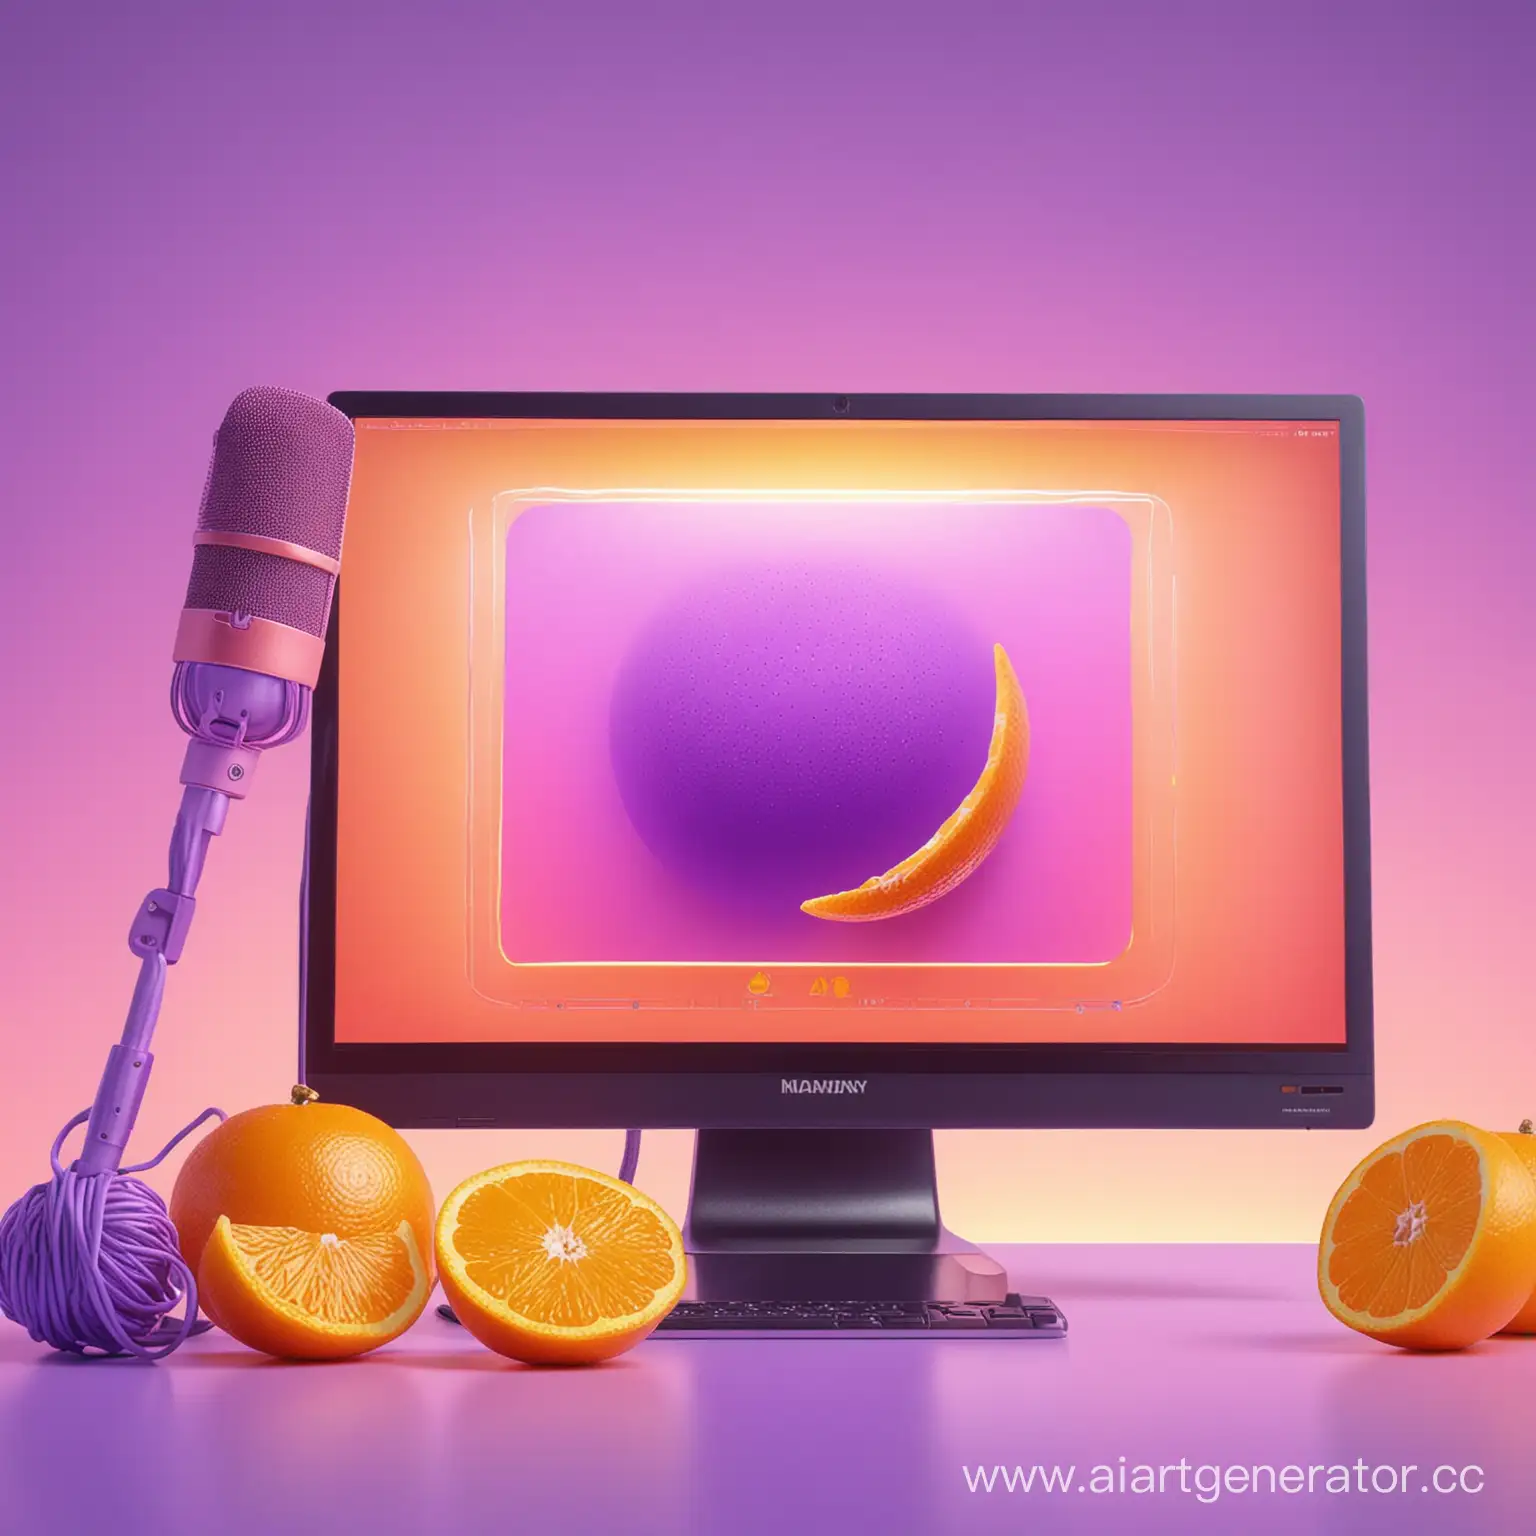 сочный оранжевый с желтым мандарин и дольки мандарина  на фоне монитора компьютера микрофона фон неоновый с сиреневым градиентом. красиво эстетично вызывает желание съесть гипер детализация, гиперреалистично, 4d